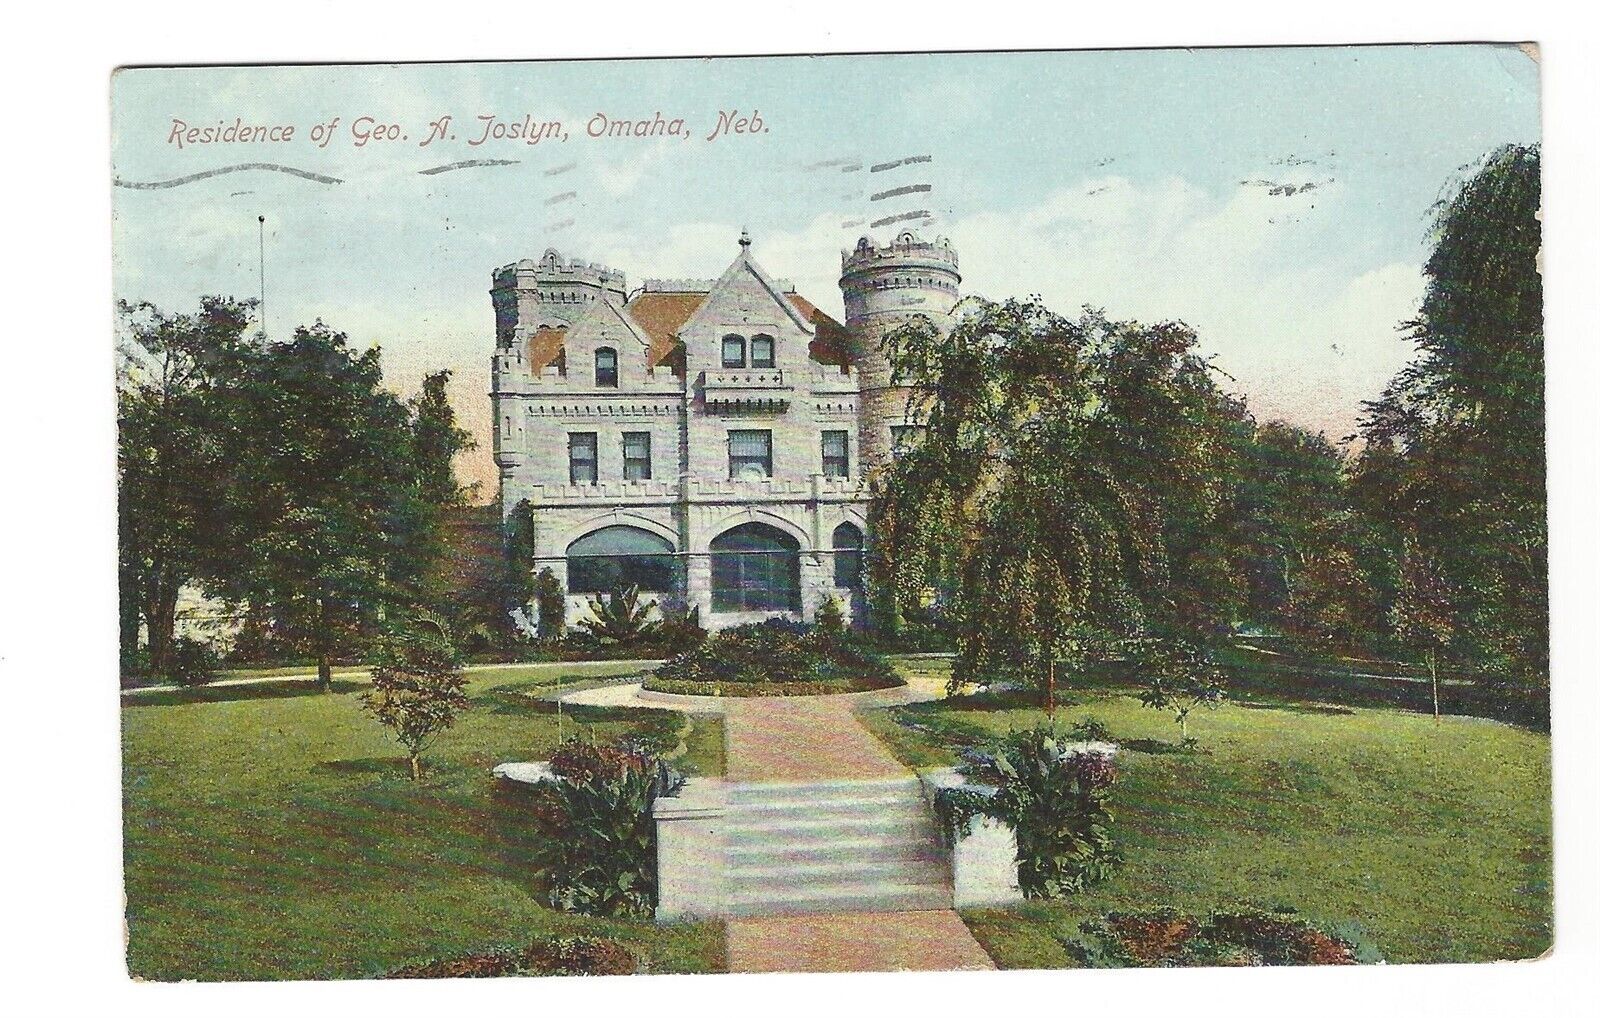 1909 Residence of George Joslyn Omaha Nebraska Postcard Castle Lynhurst